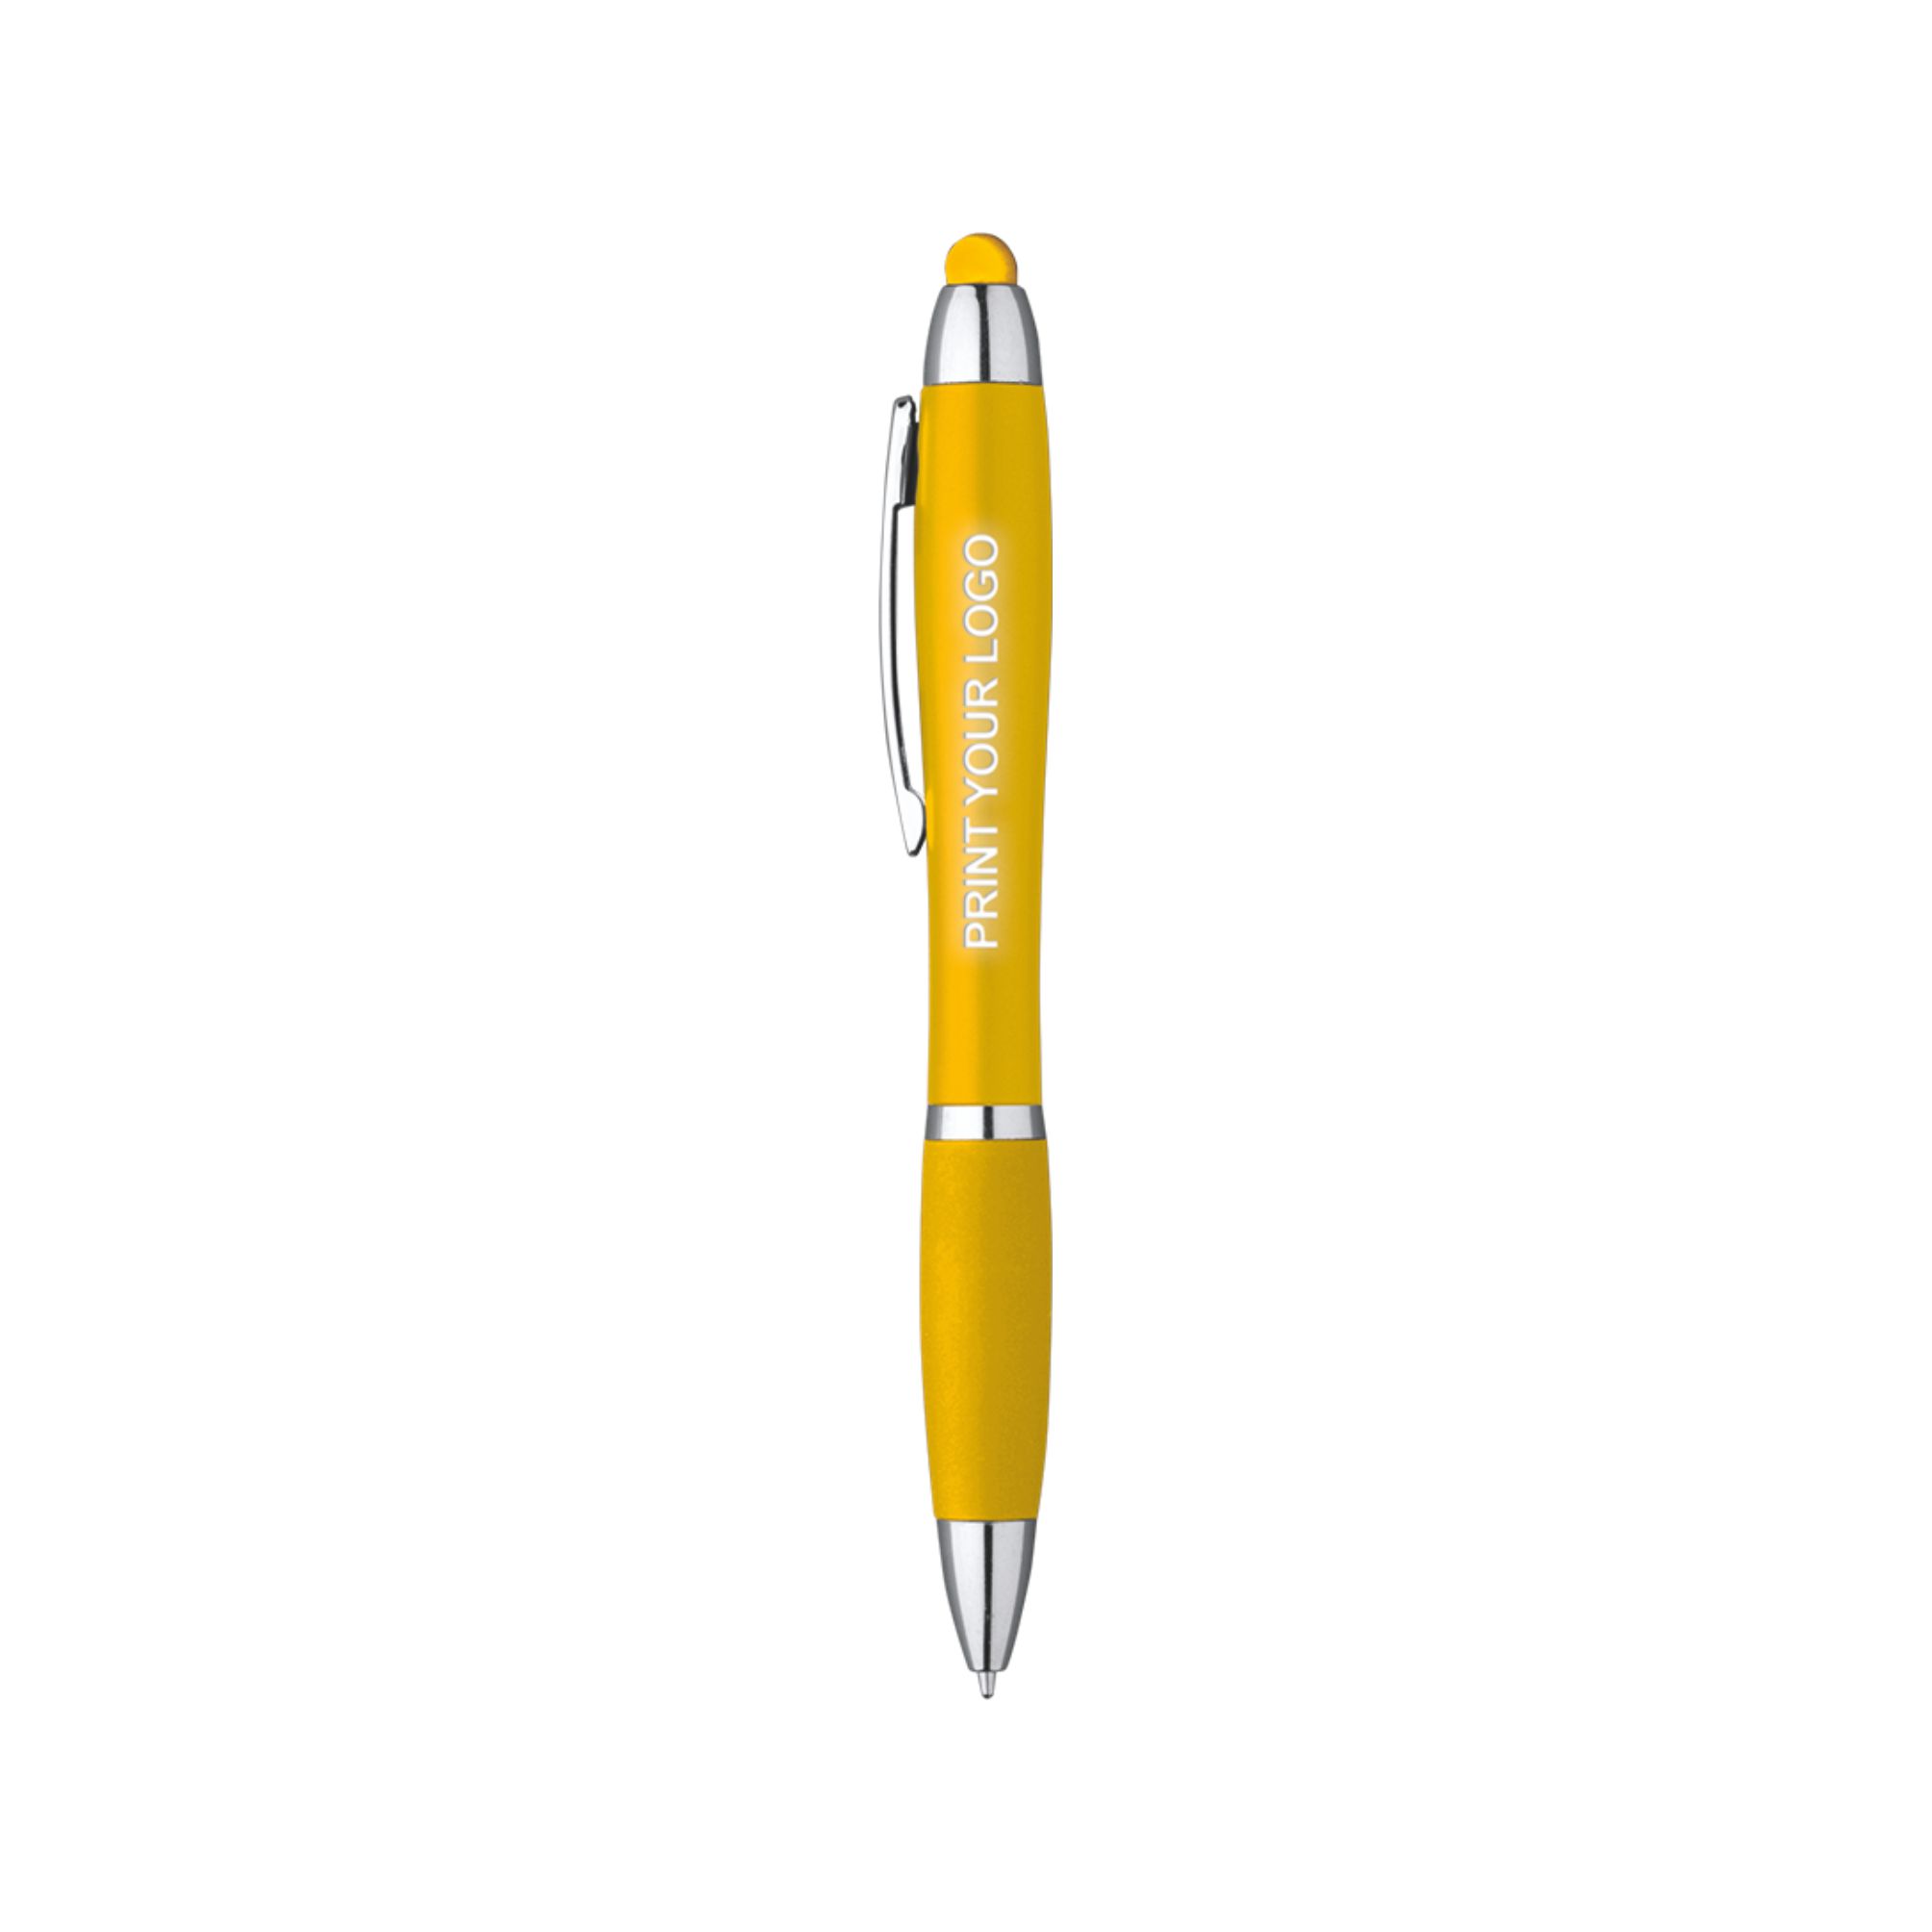 5234-neon-color-penna-sfera-touch-con-led-giallo.jpg